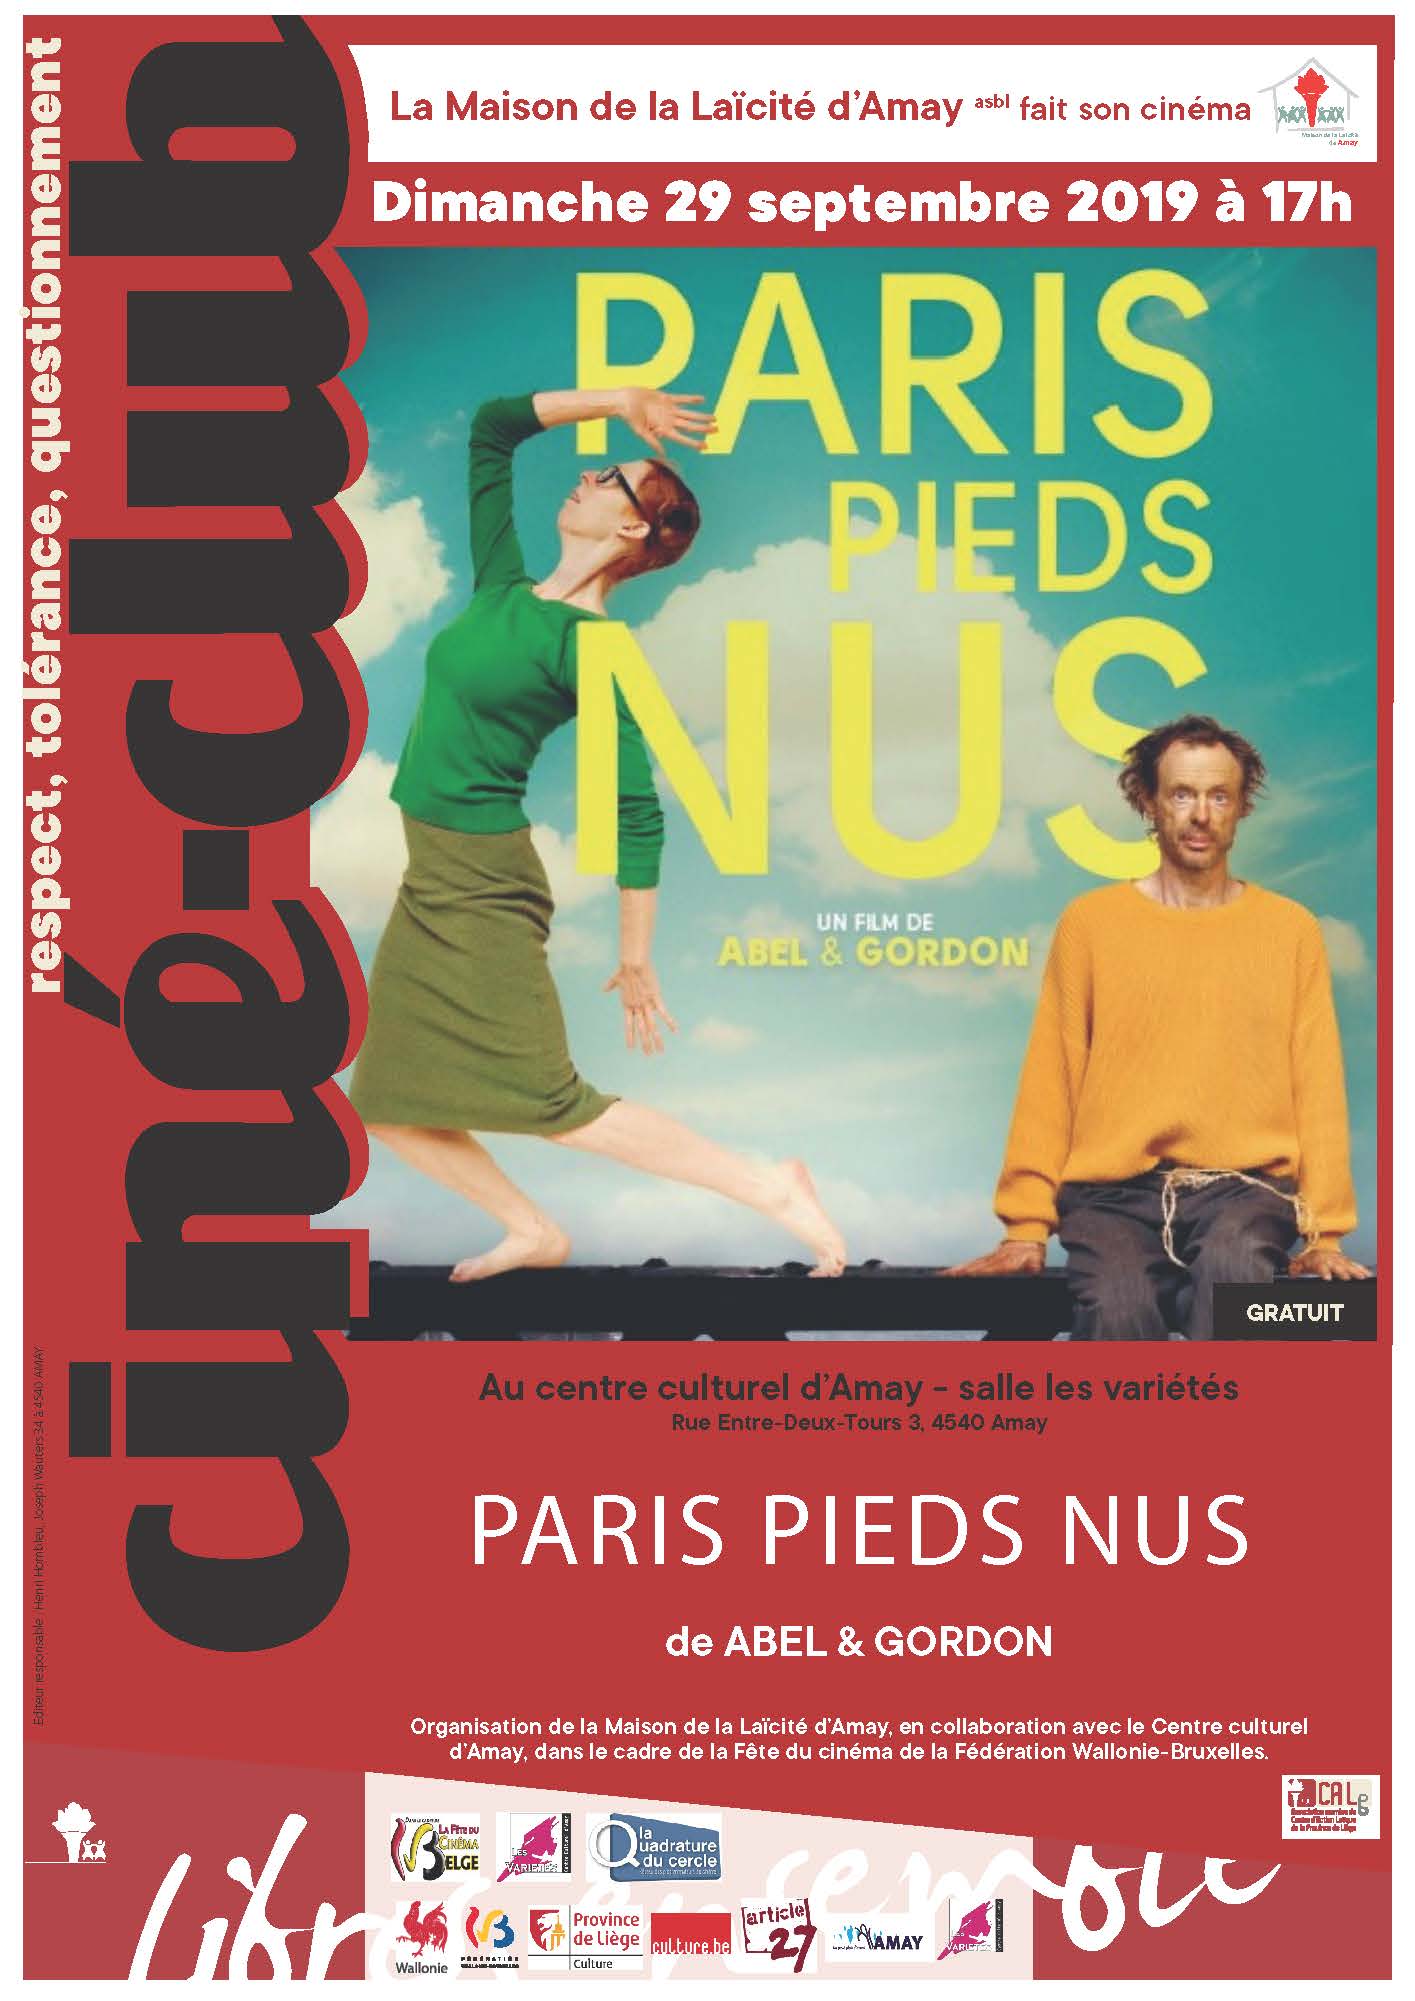 Affiche promotionnelle pour le ciné-club de la Maison de la Laïcité d'Amay : Paris pieds nus